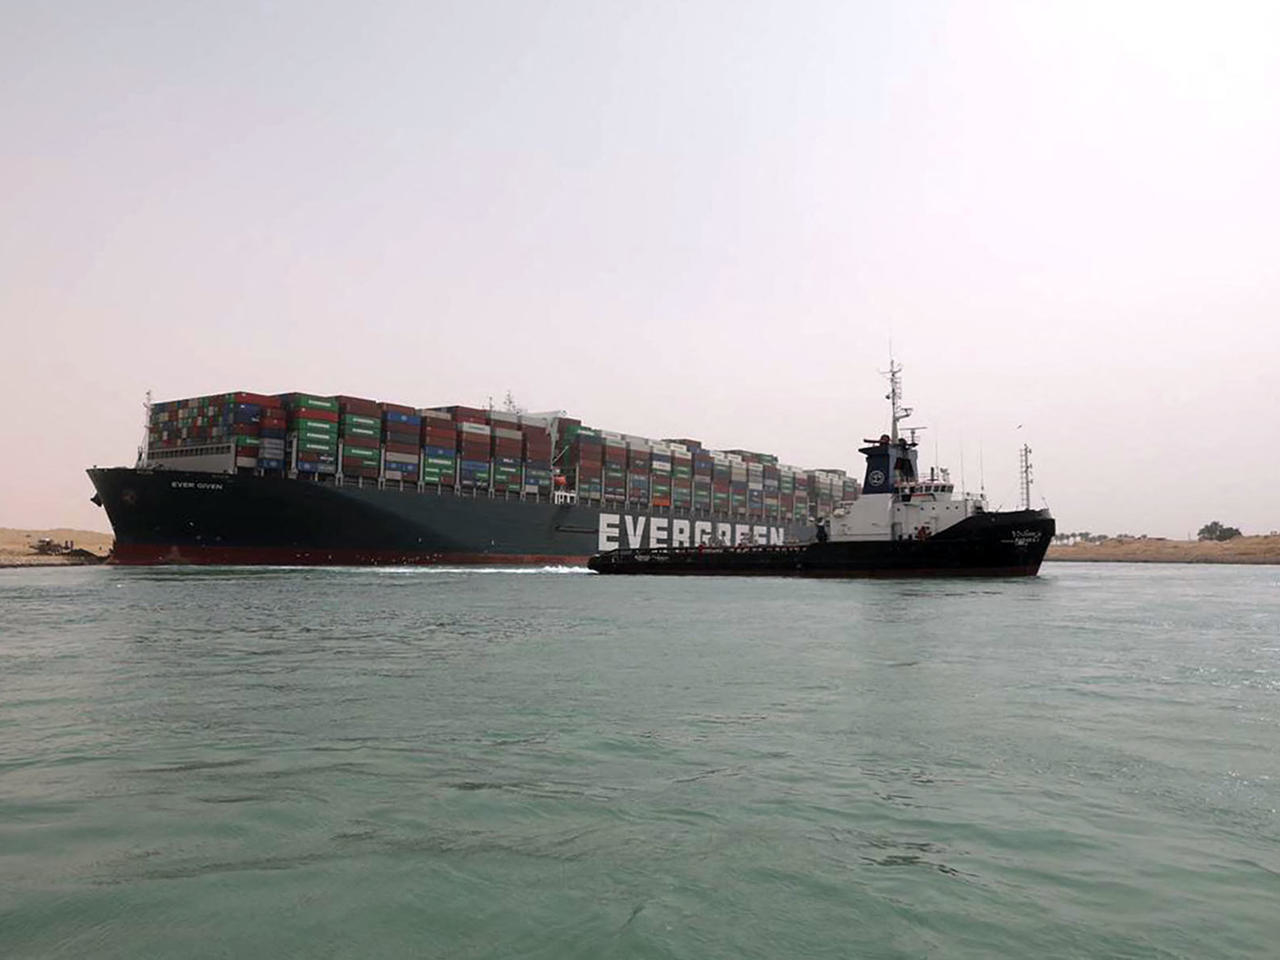 Canal de Suez bloqué : de nouvelles tentatives de renflouage prévues ce week-end